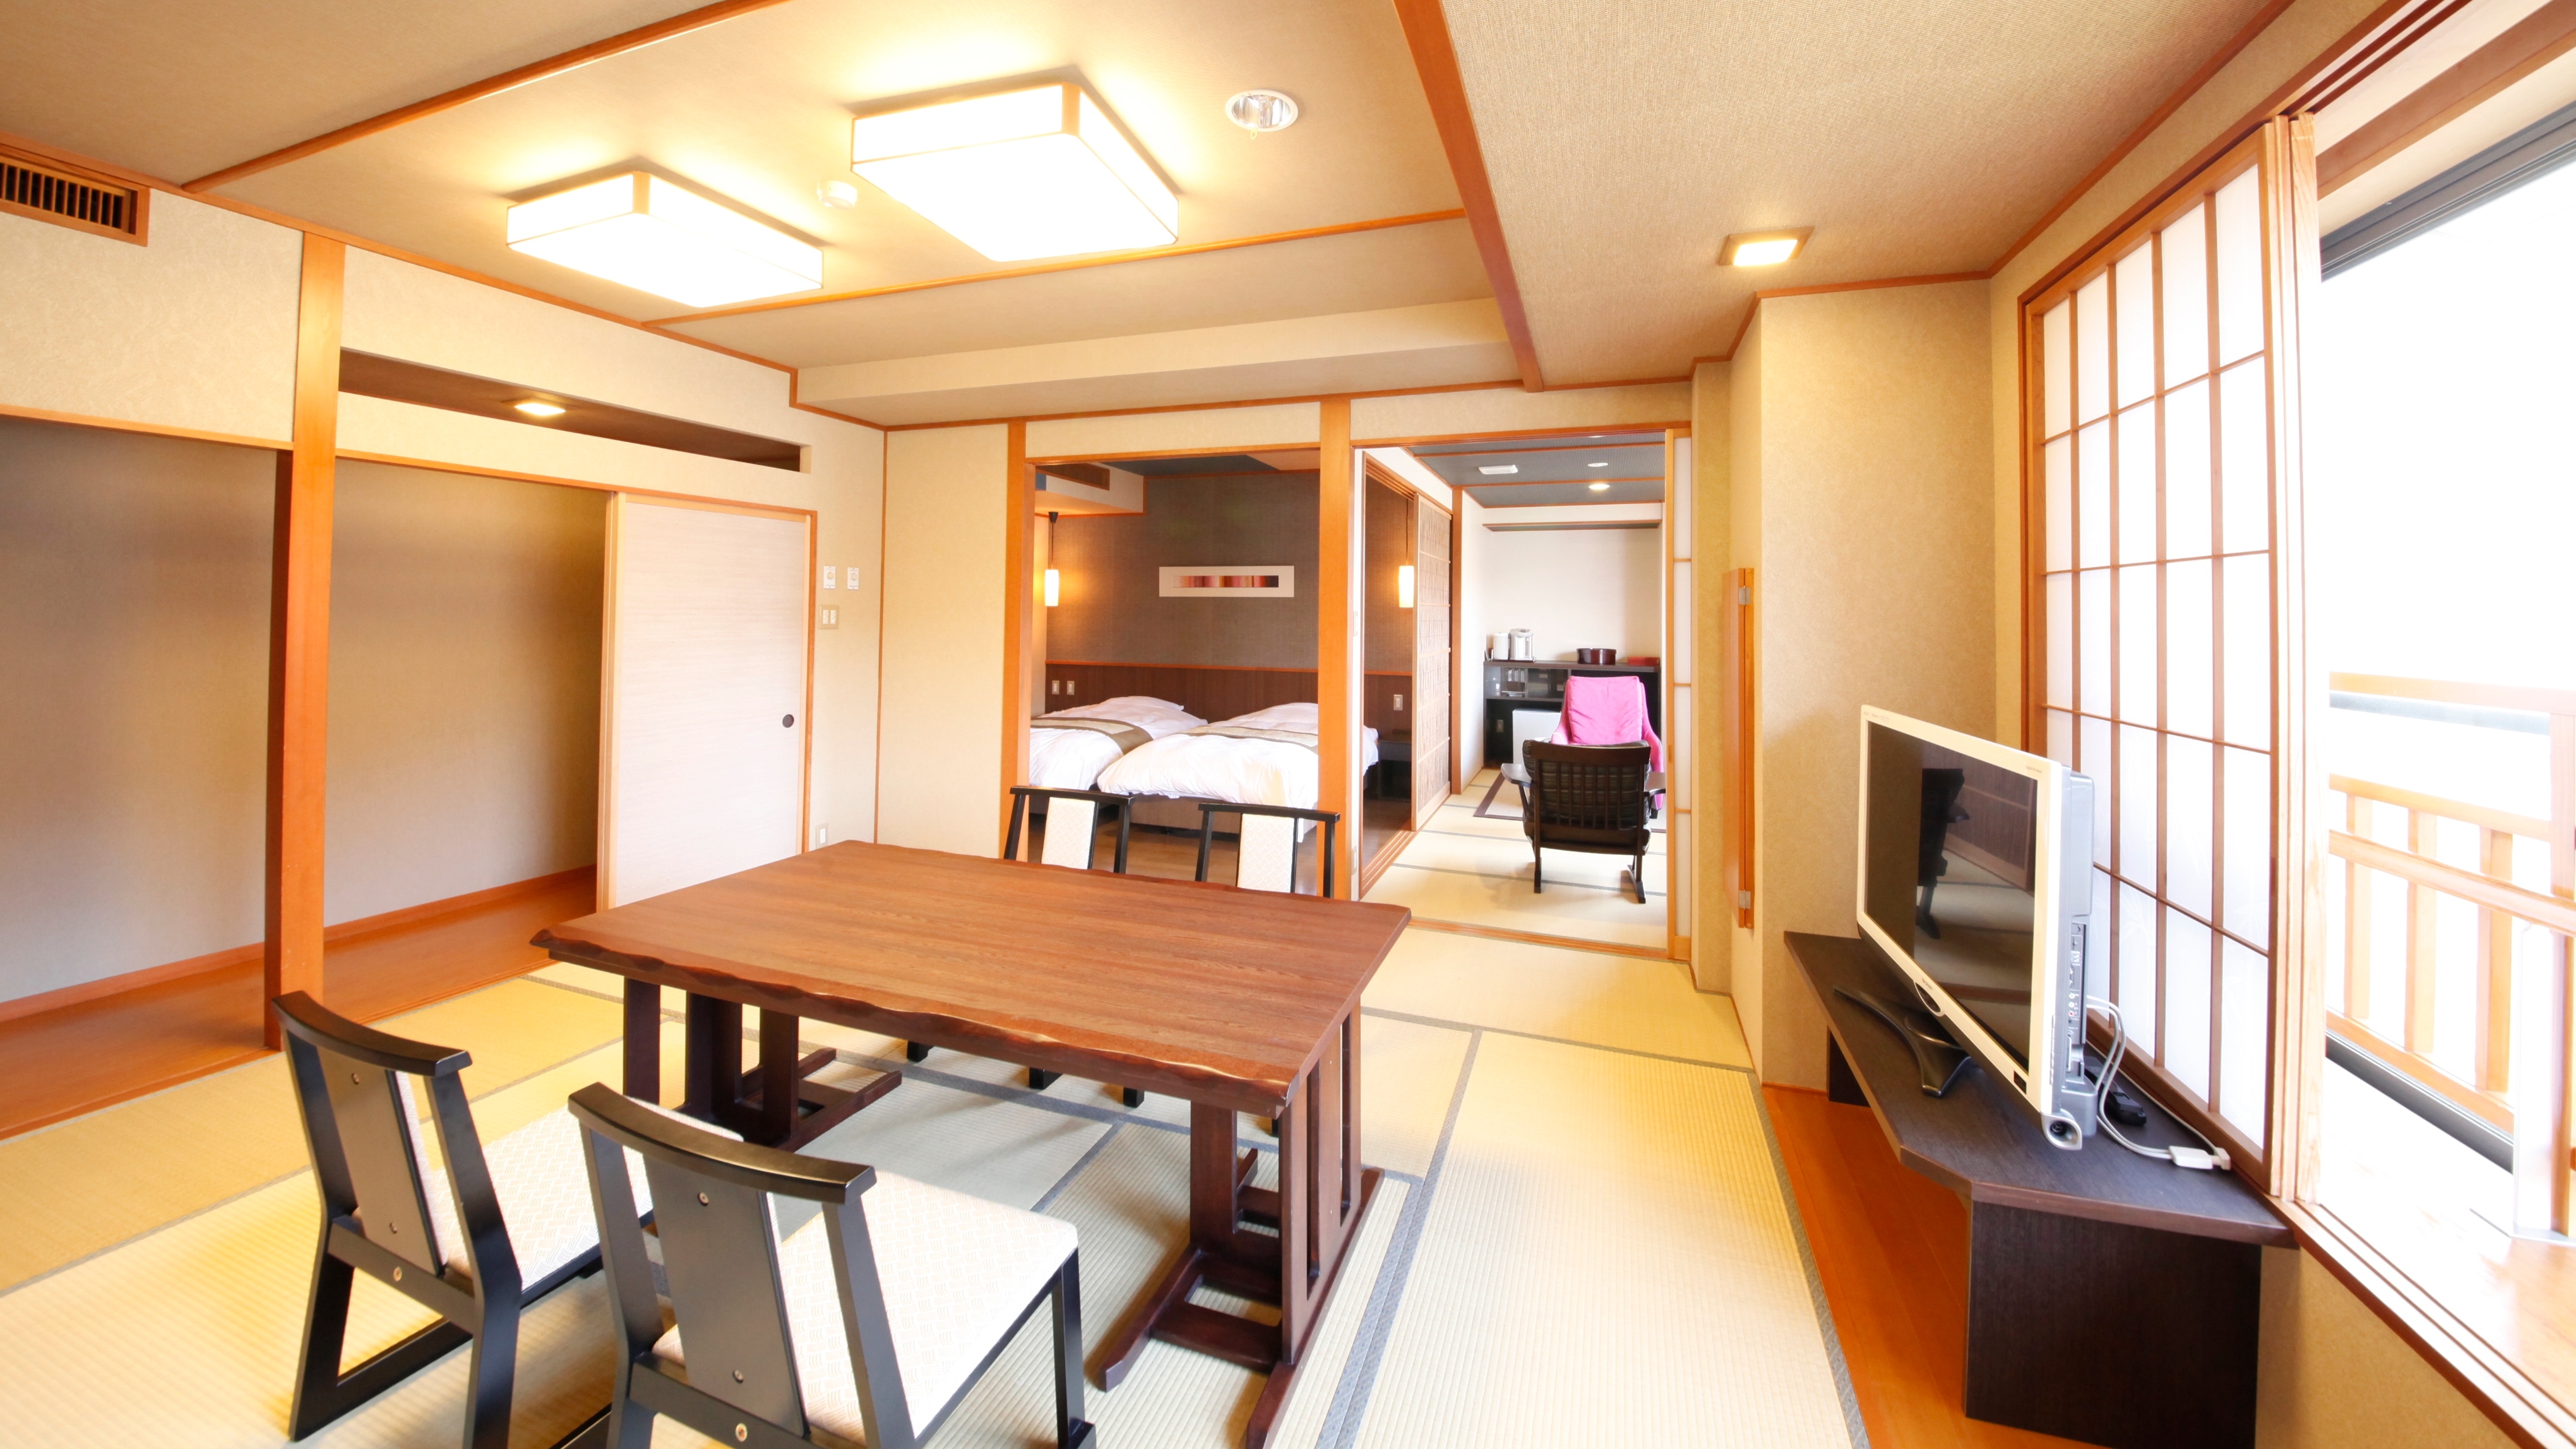 ห้อง 403 [Hagi no Ma] ห้องแบบญี่ปุ่นและตะวันตกที่ปราศจากสิ่งกีดขวาง